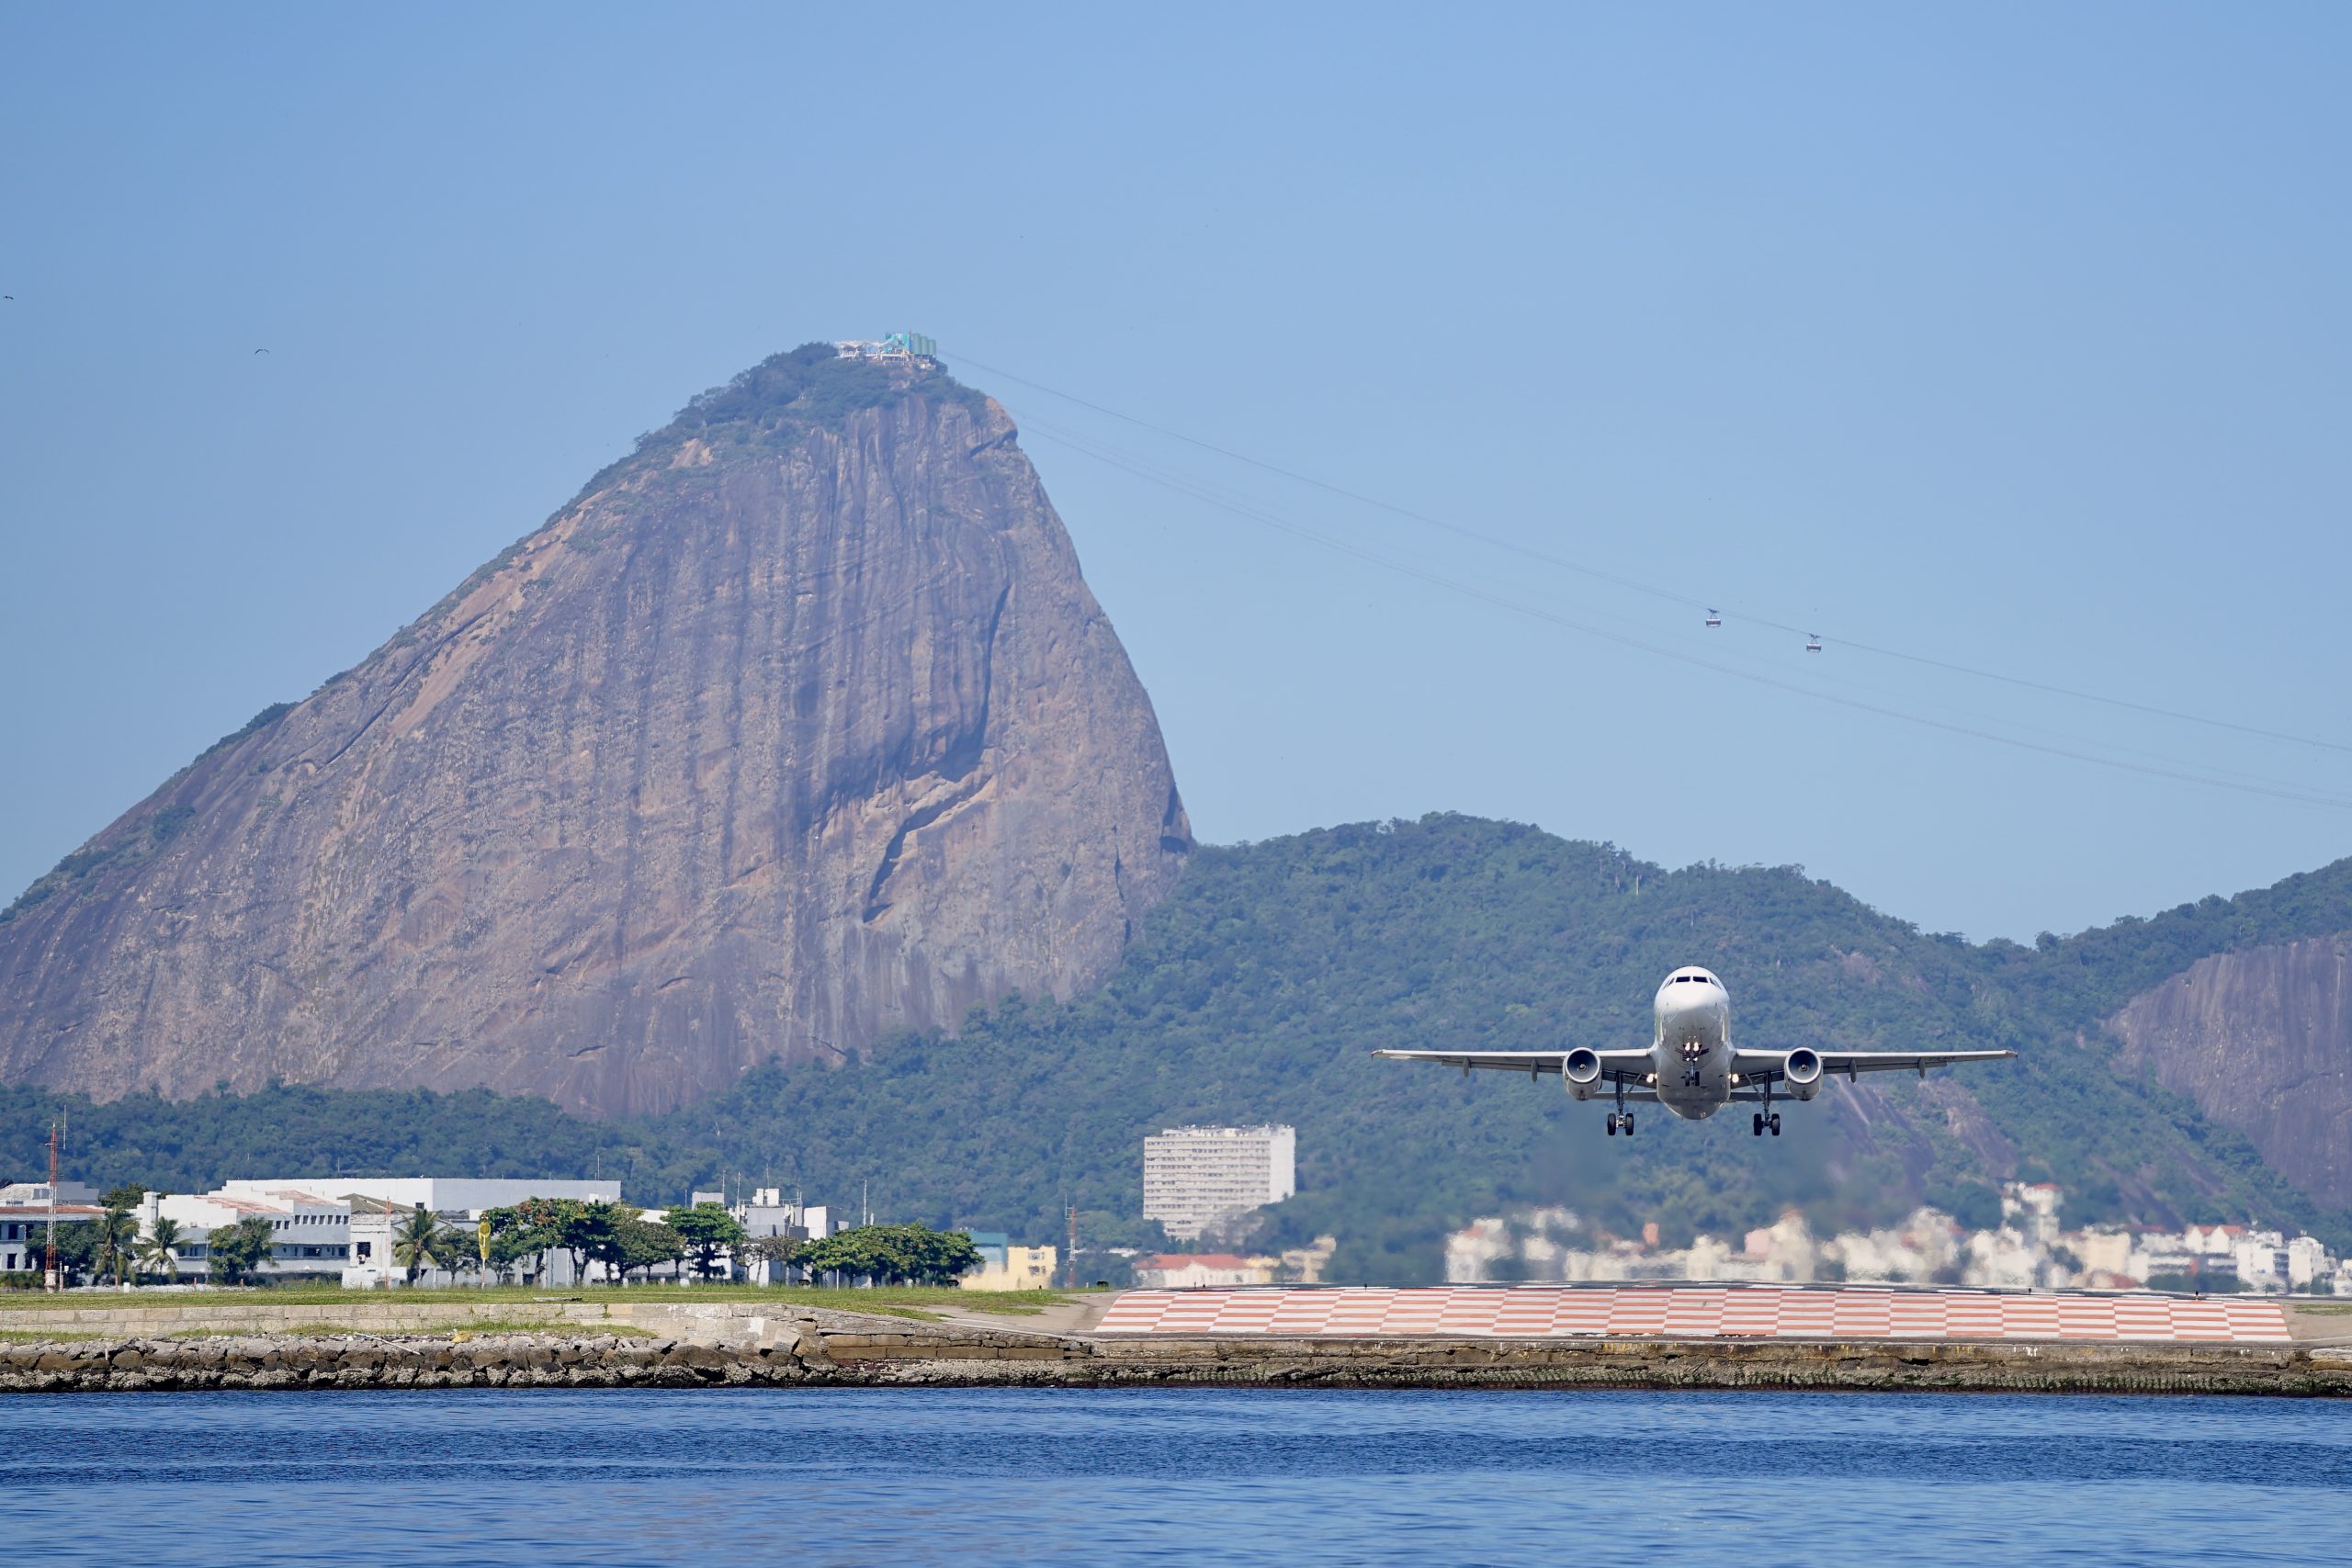 Saiba quais são os destinos atuais disponíveis a partir do Aeroporto Santos-Dumont